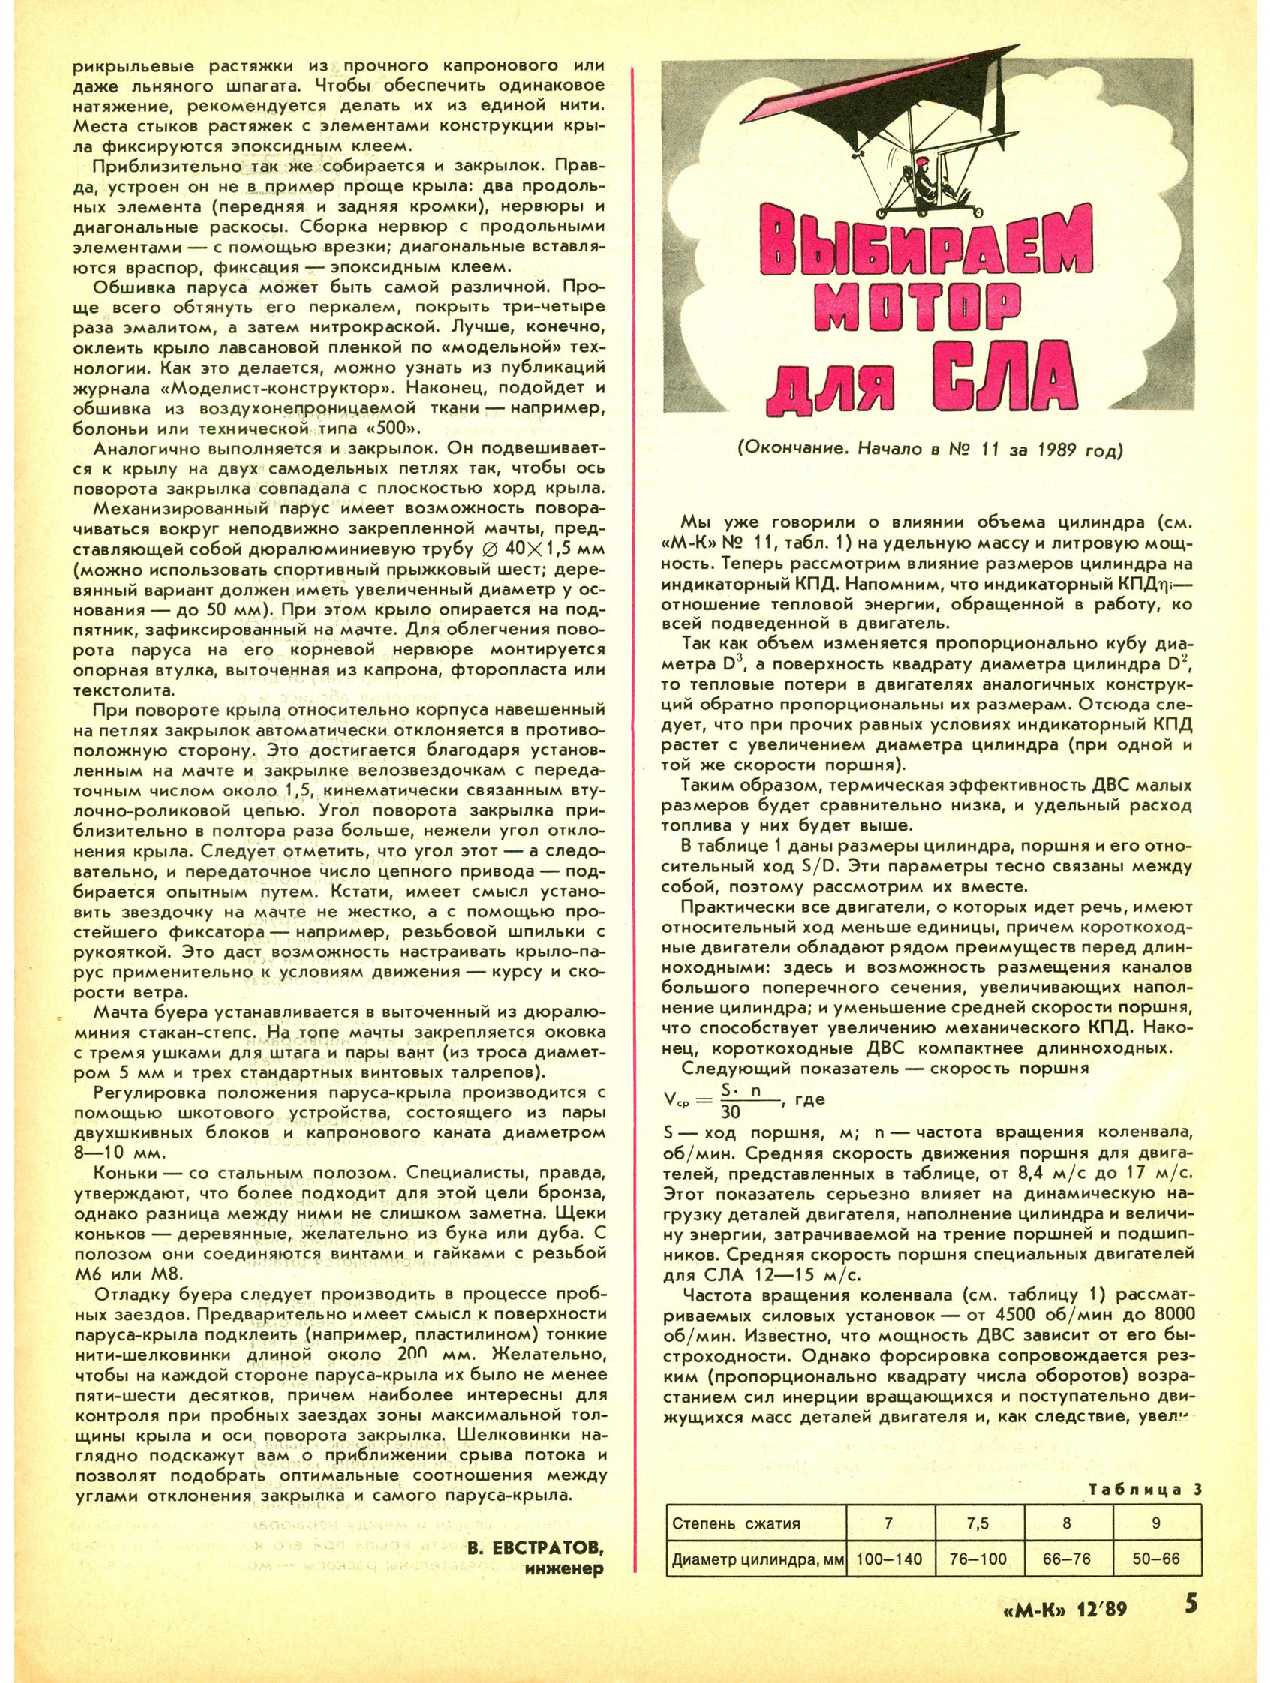 МК 12, 1989, 5 c.